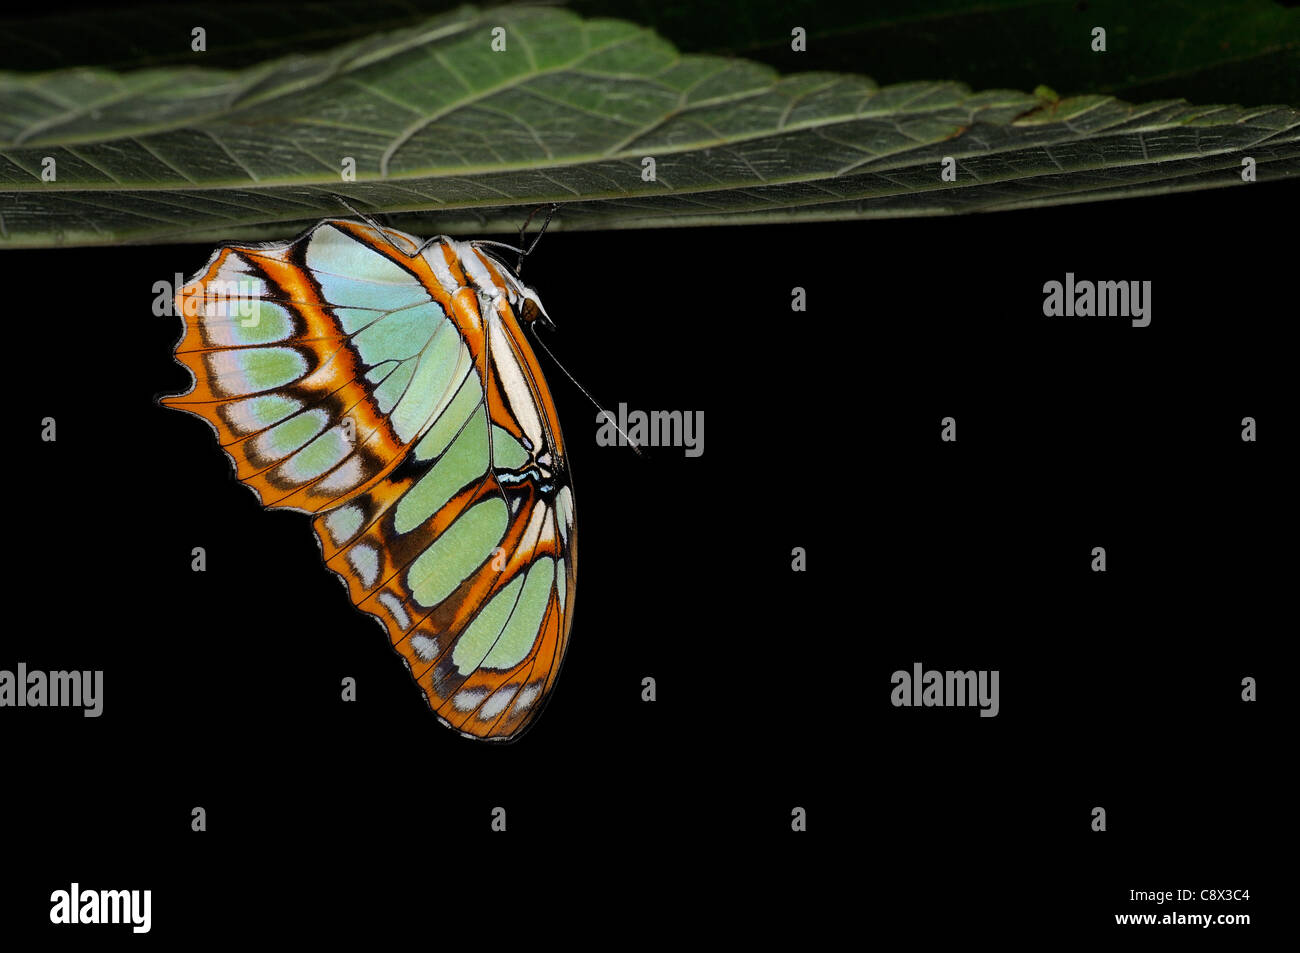 Siproeta stelenes Malachite (papillon) se percher sur la partie inférieure de la feuille, Parc national Yasuni, en Equateur Banque D'Images